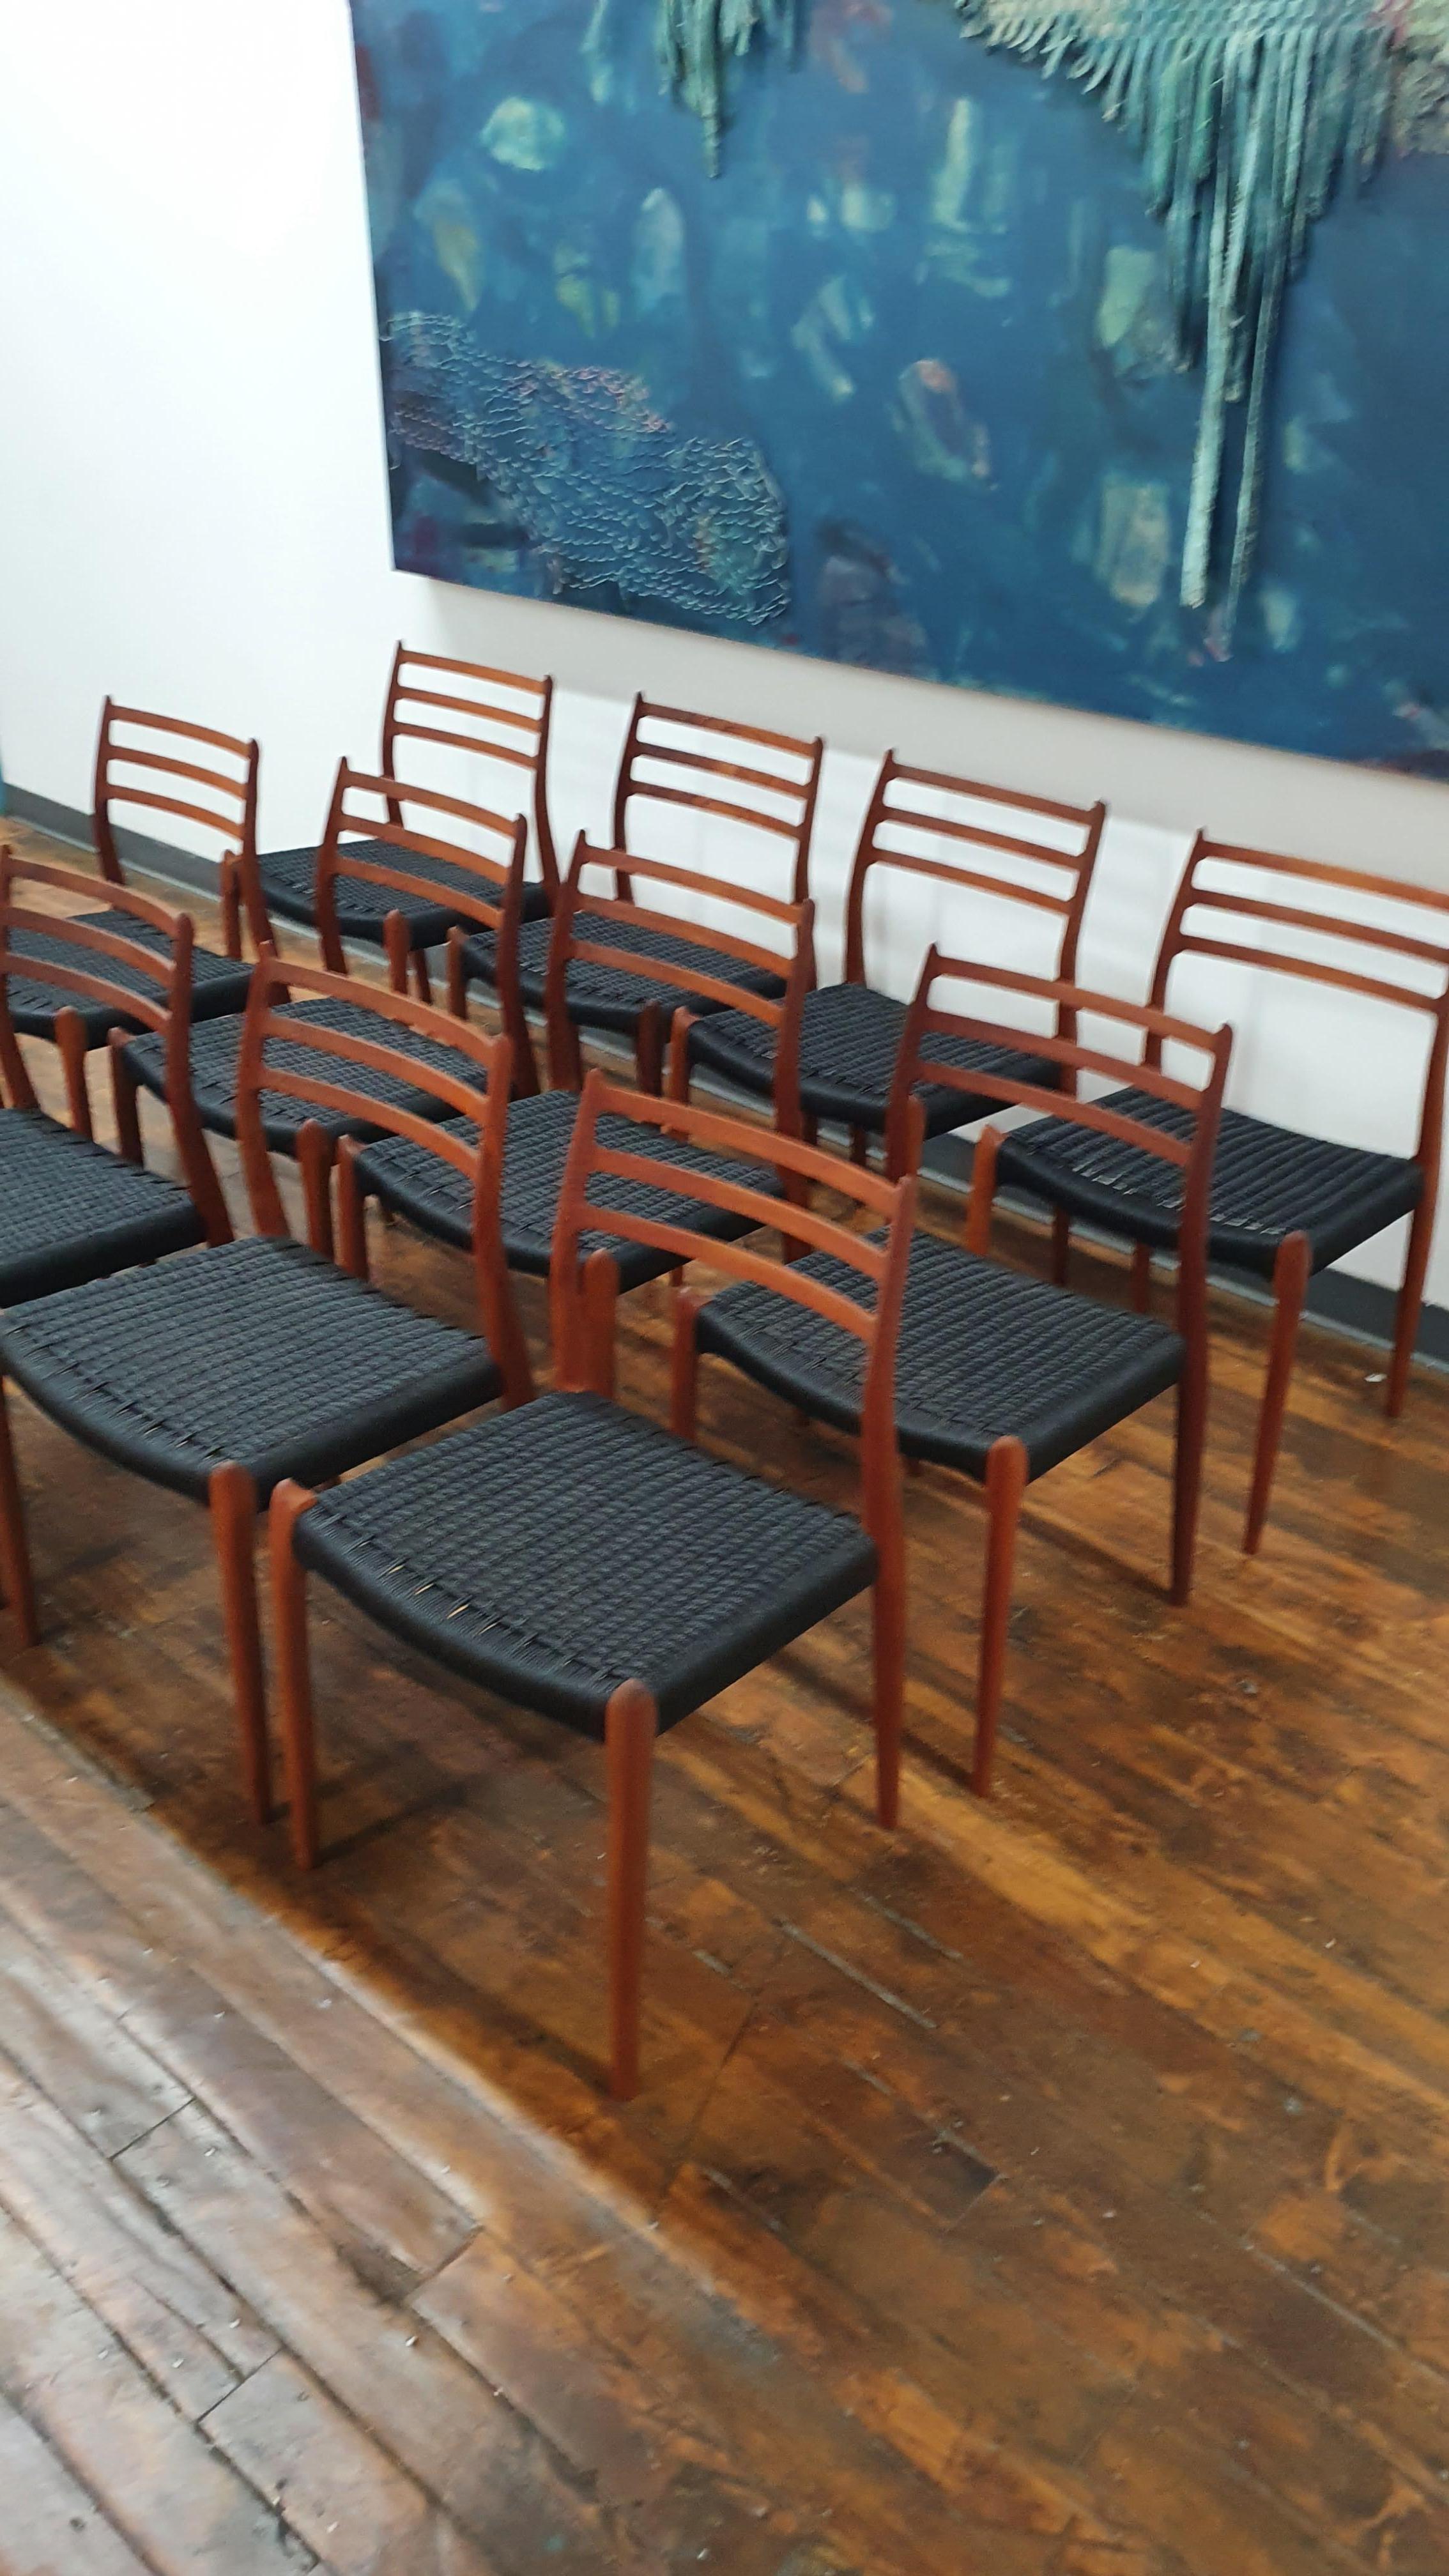 Bel ensemble de 12 chaises Moller, modèle 78 avec une nouvelle corde danoise noire. Ces chaises ont été revernies et rehuilées. Il y a quelques éraflures et gouges dans certaines parties du bois qui donnent une excellente patine vintage tout en